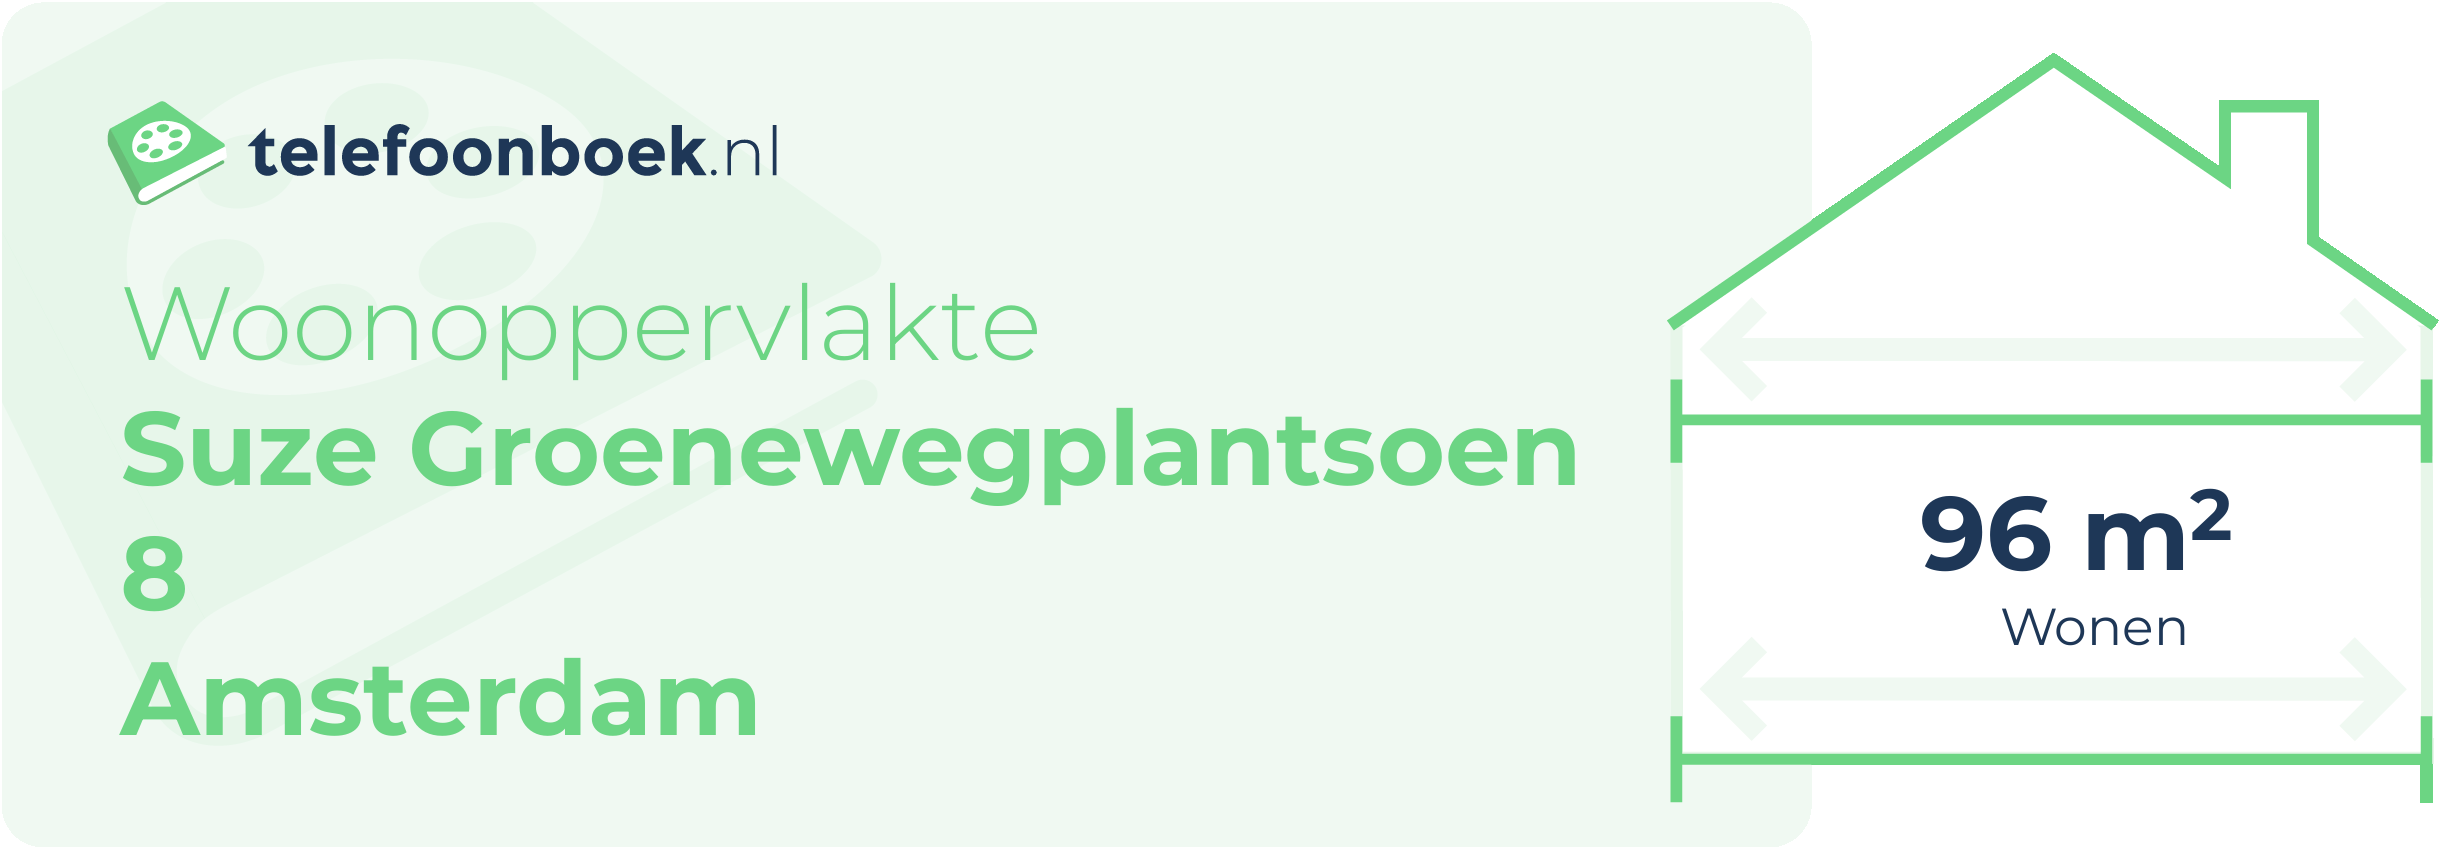 Woonoppervlakte Suze Groenewegplantsoen 8 Amsterdam